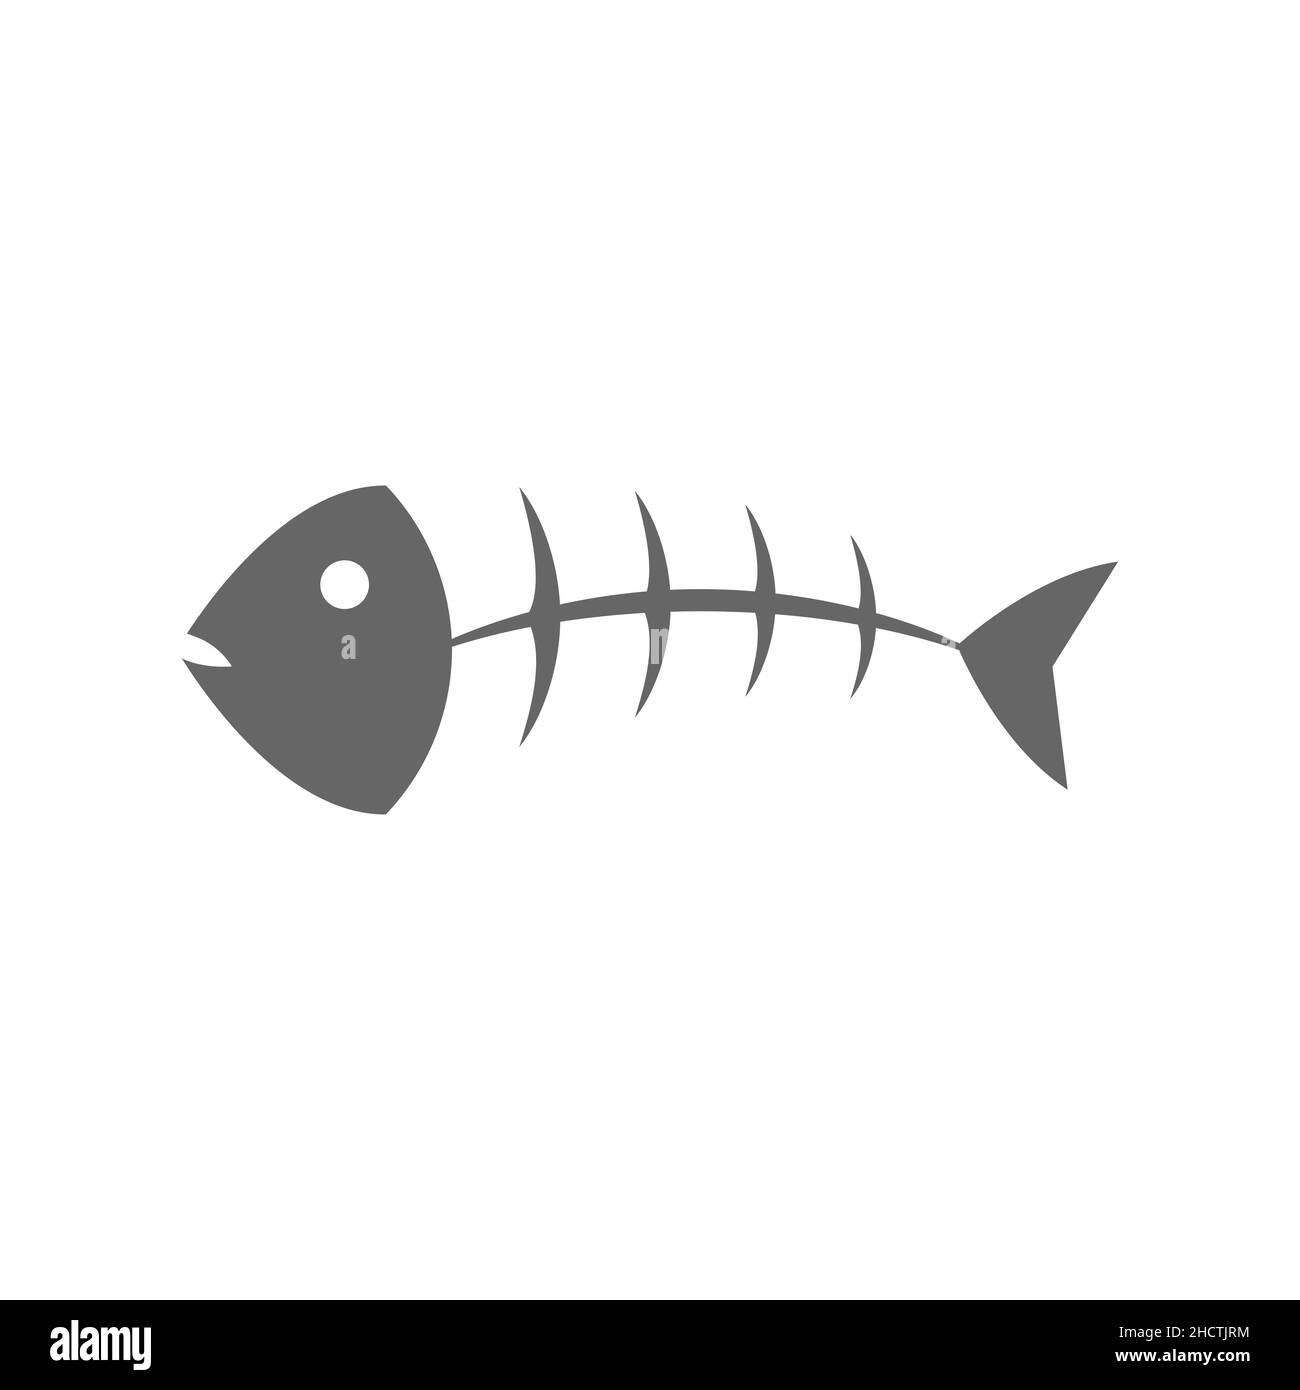 Ossa di pesce su sfondo bianco. Icona, simbolo o segno grigio a forma di pesce. Scheletro di pesce. Concetto di pesce morto. Conservazione ambientale della fauna selvatica. Vettore Illustrazione Vettoriale